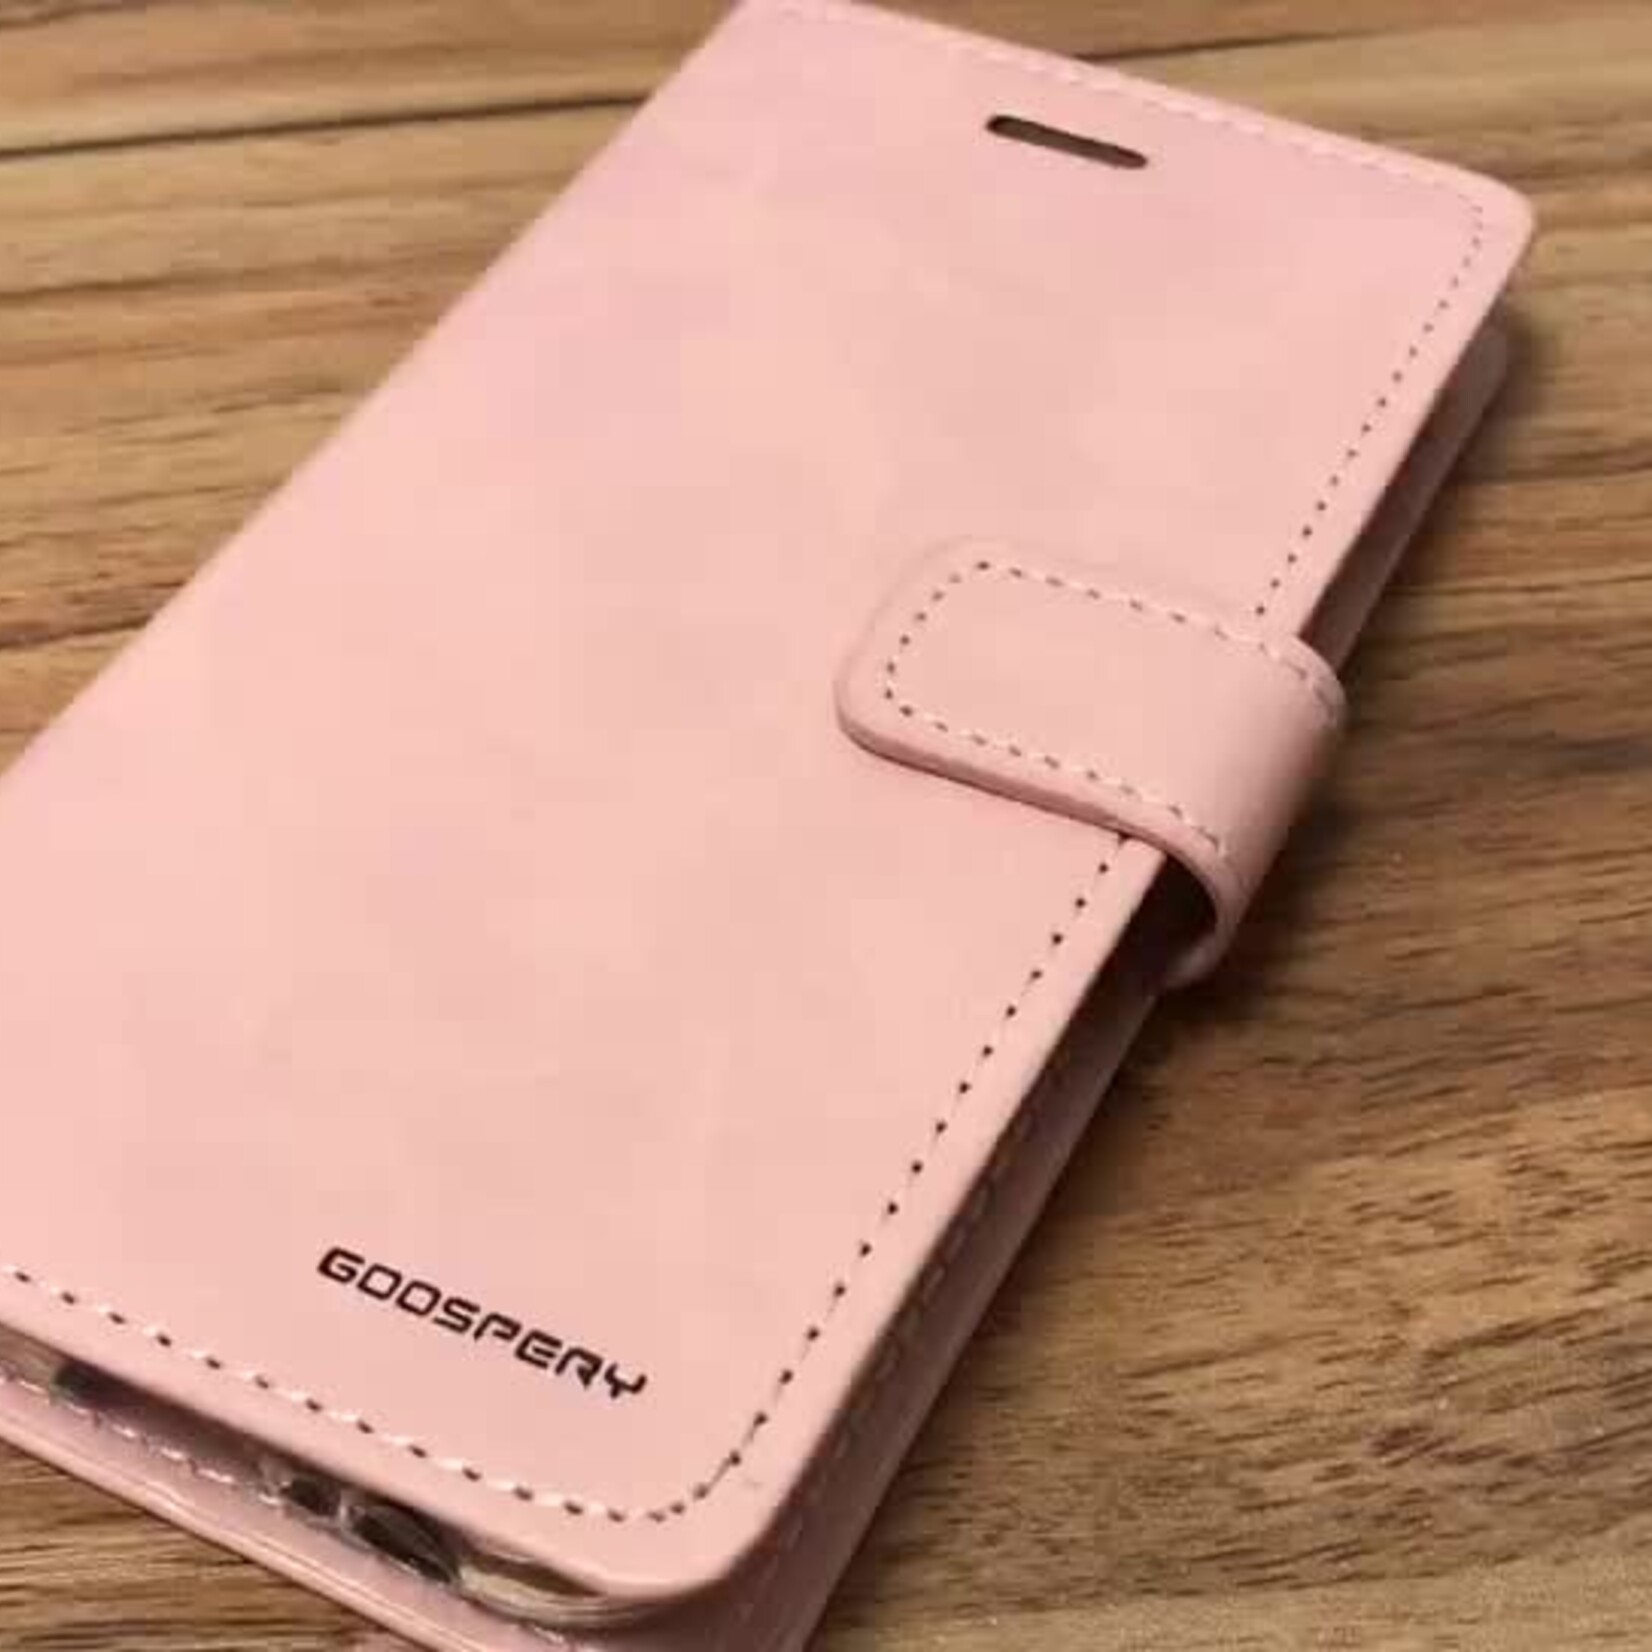 LG ÉTUI LG G7 Goospery wallet